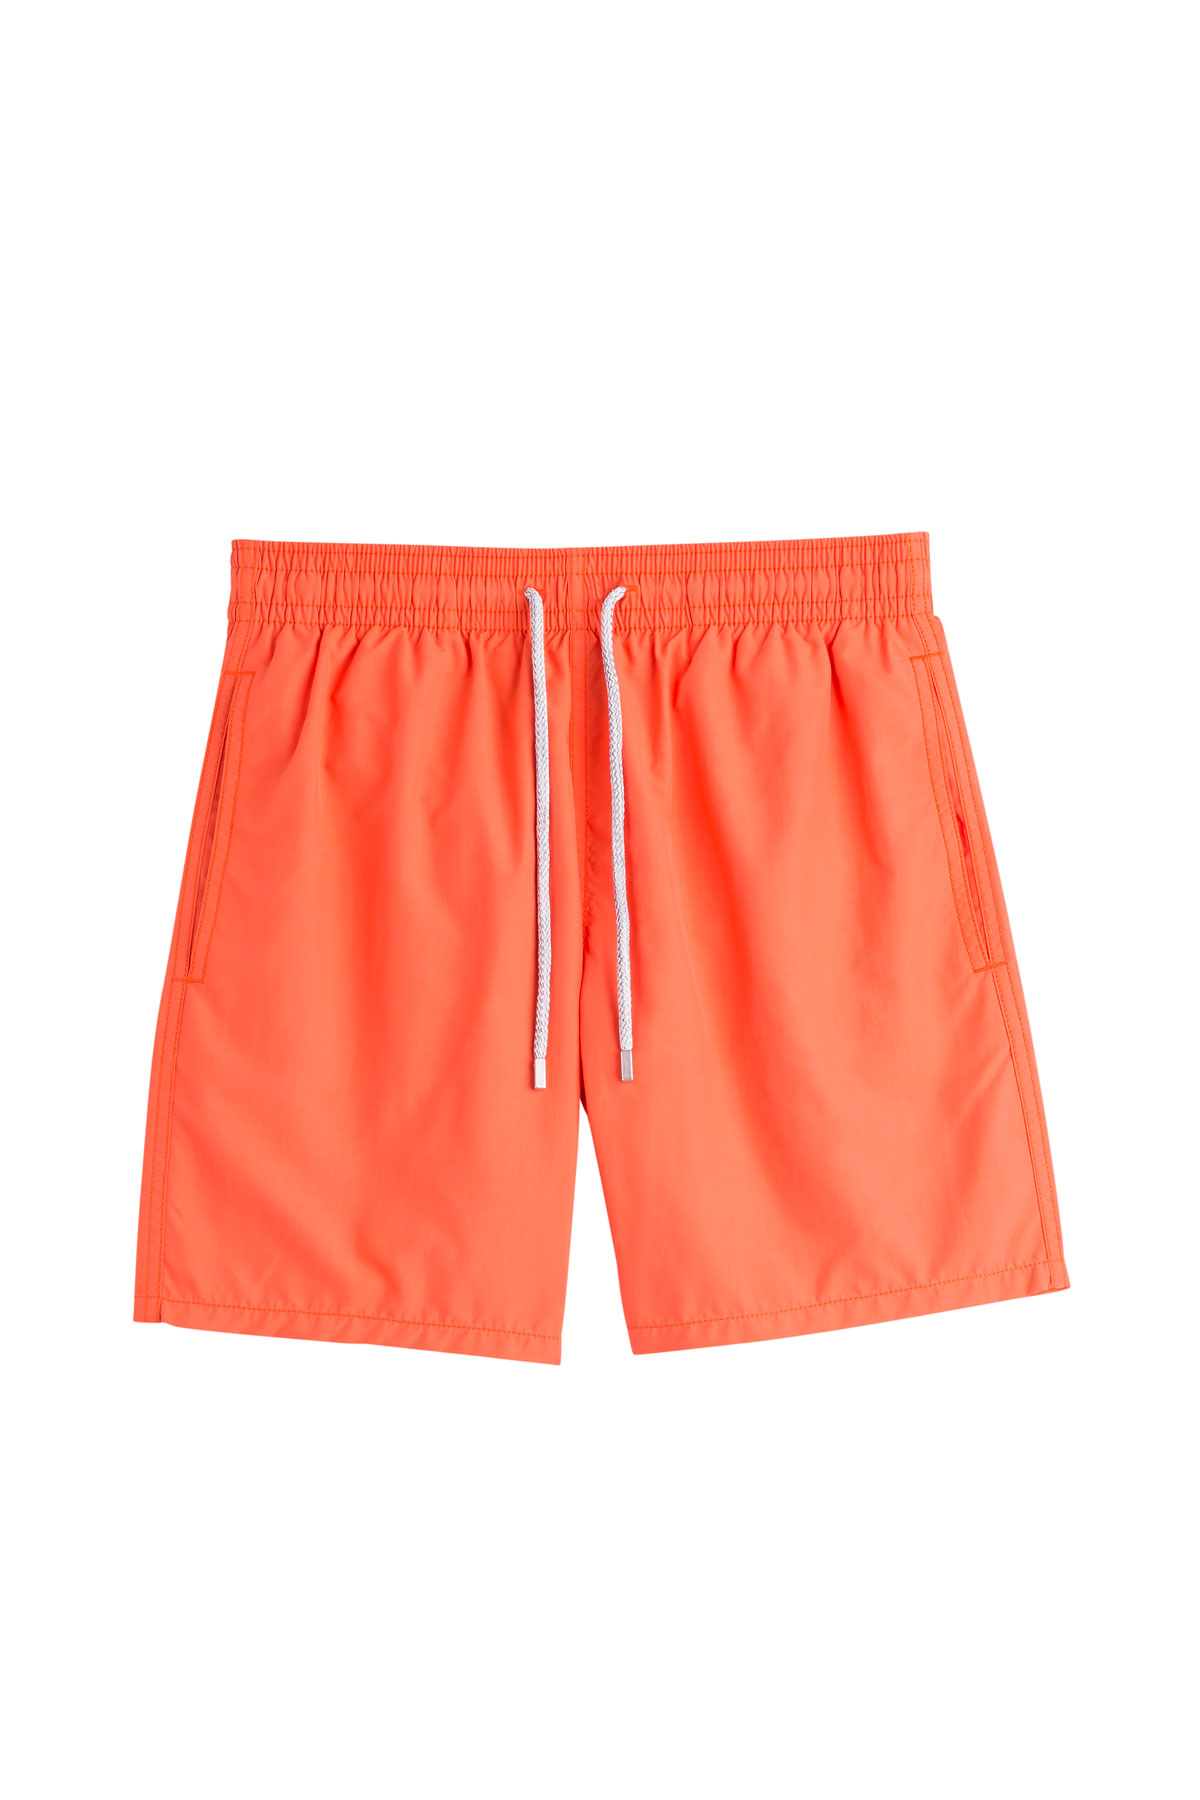 Vilebrequin Swim Trunks - Orange in Orange for Men | Lyst